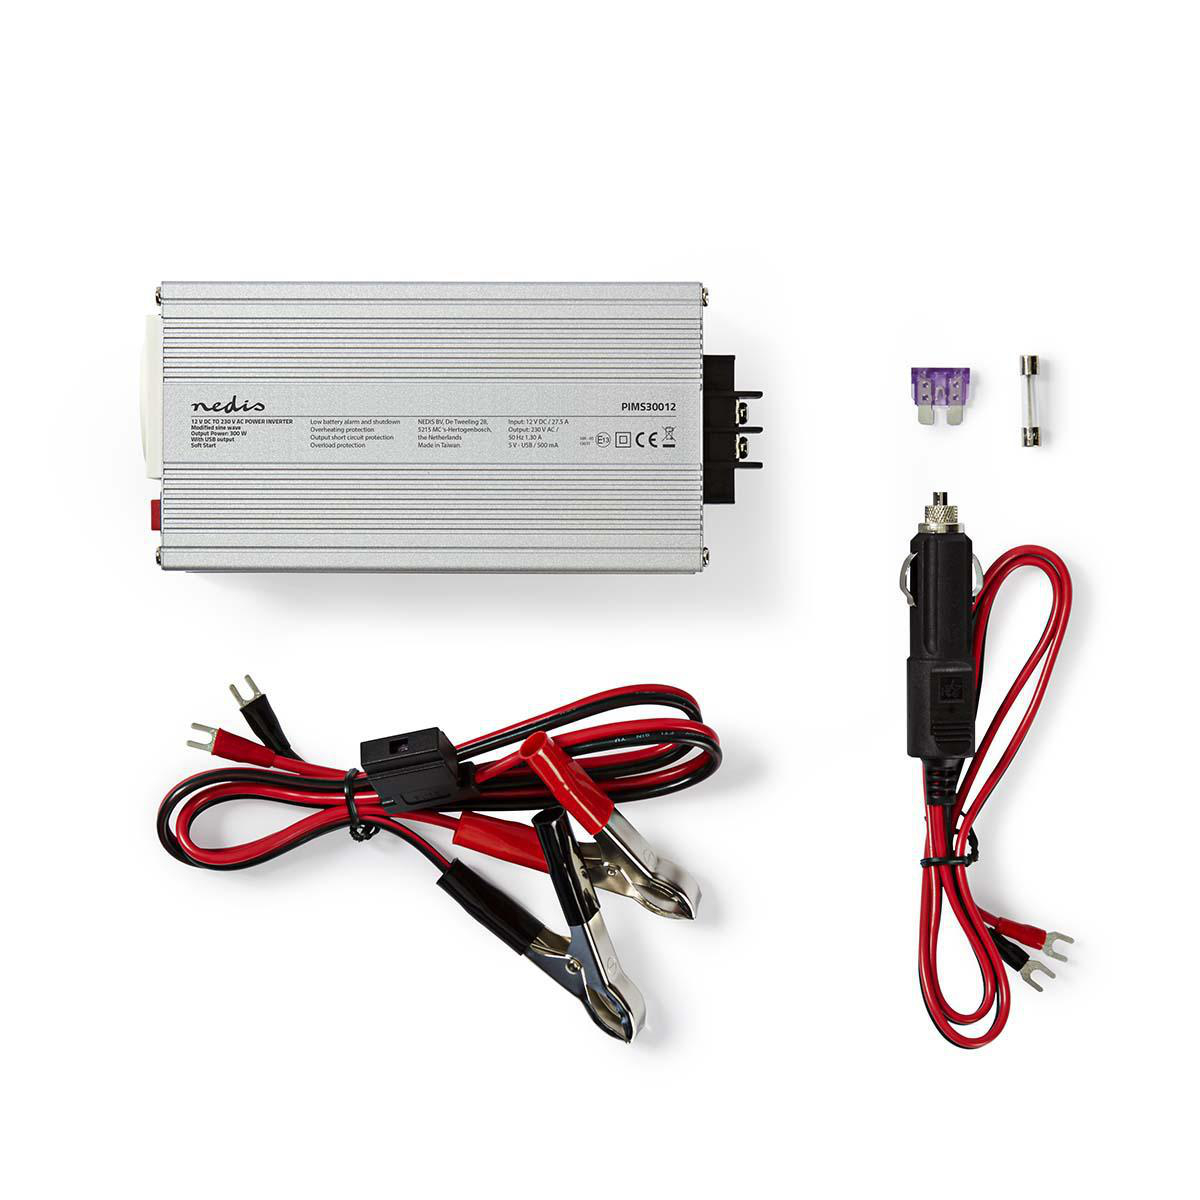 NEDIS Inverter Power PIMS30012